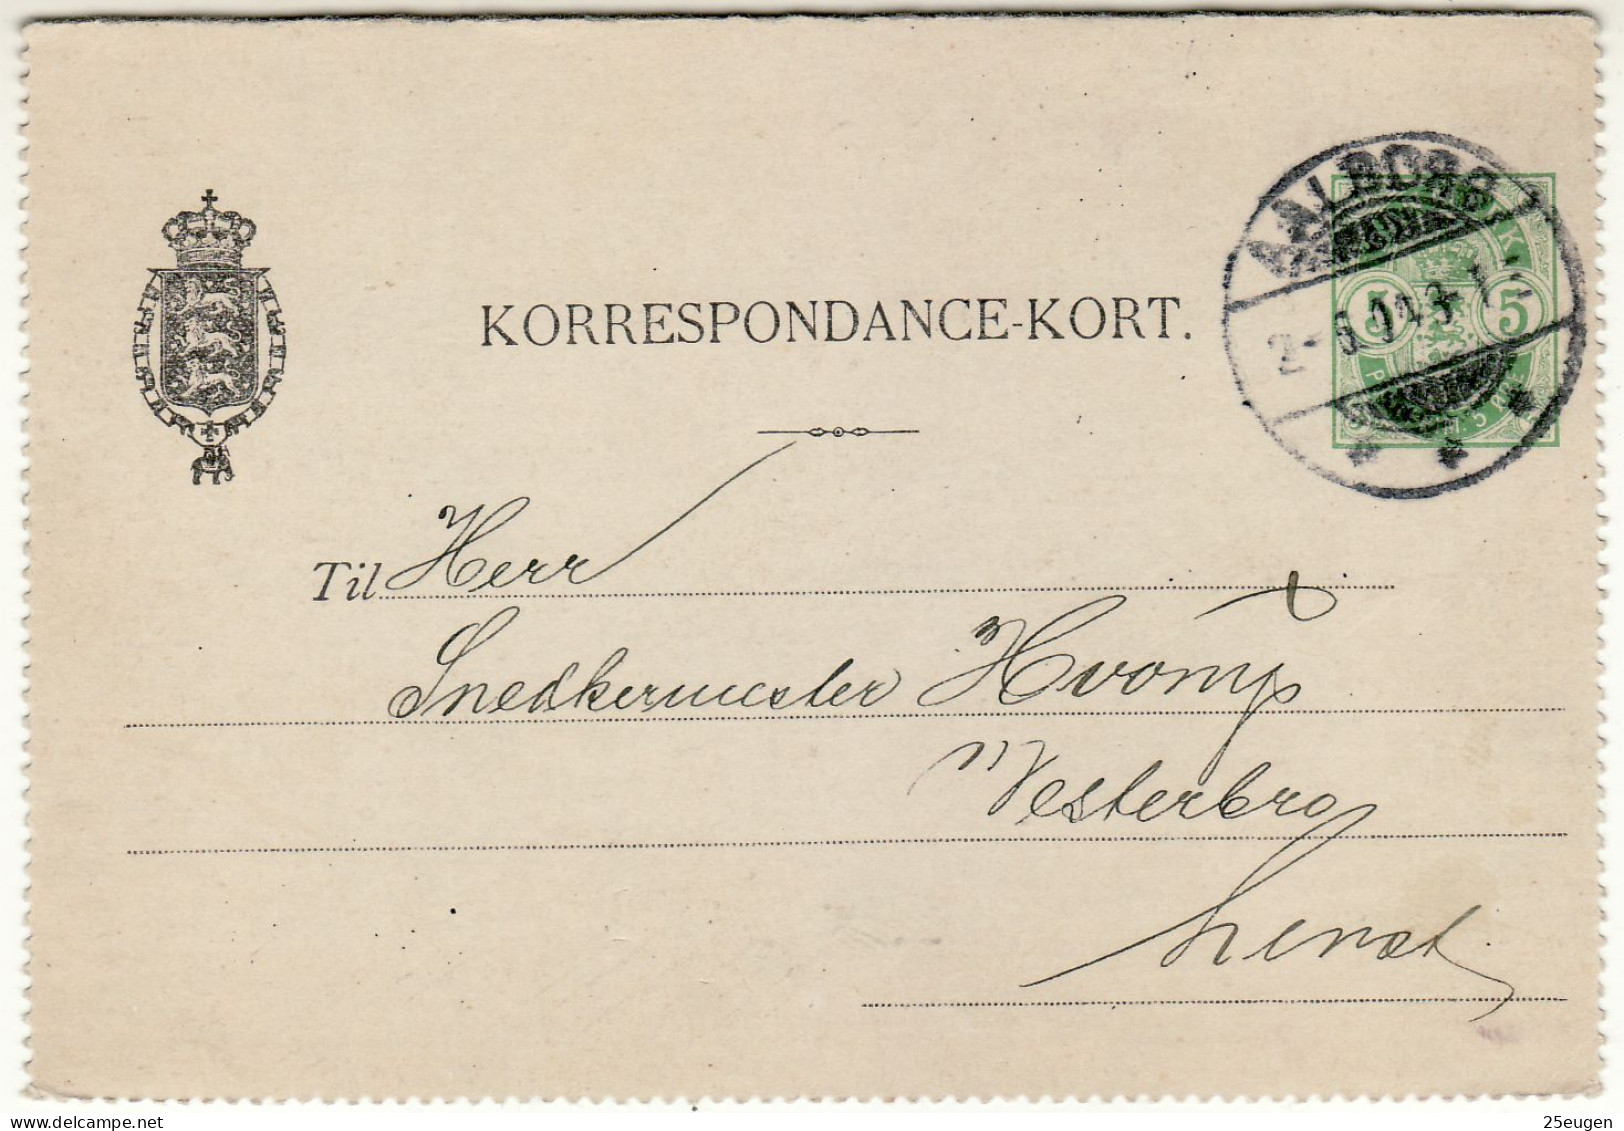 DENMARK 1904 CARD LETTER MiNr K 14 SENT FROM AALBORG - Interi Postali